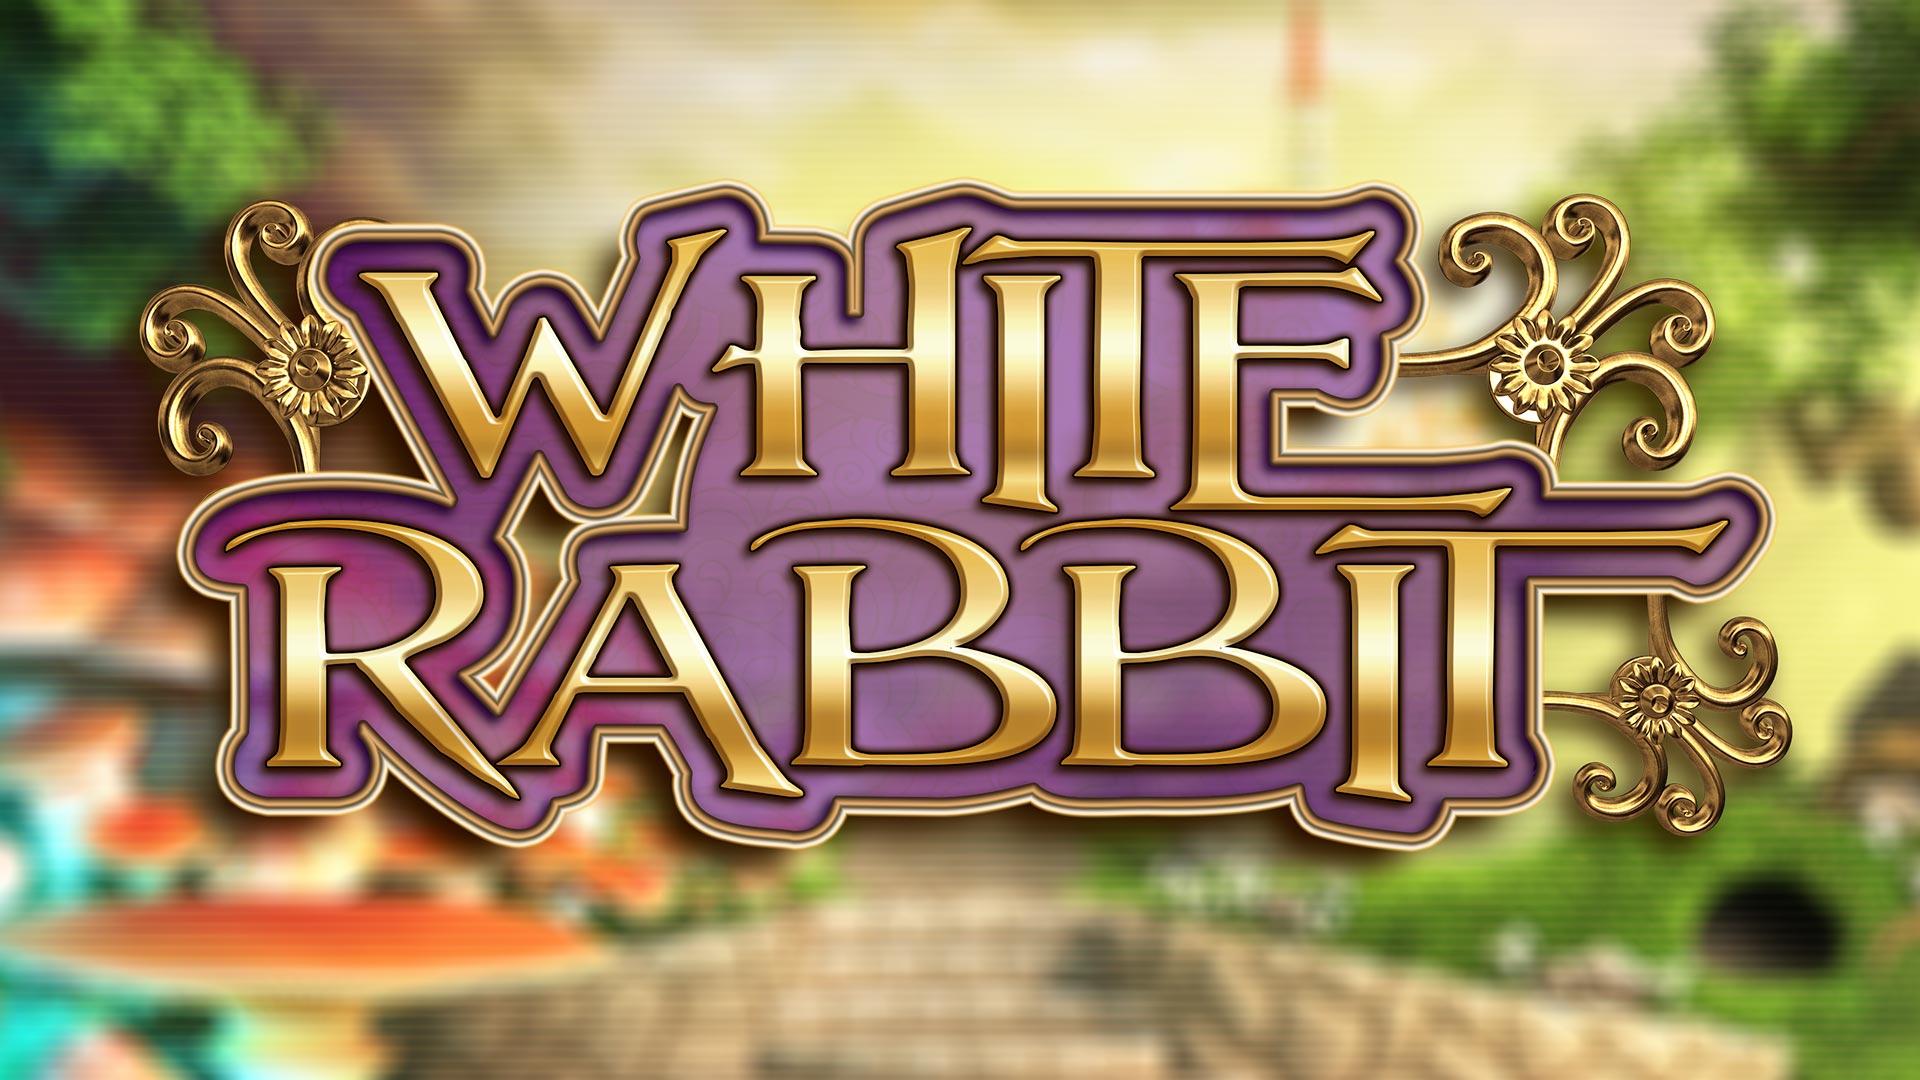 White Rabbit Slot Logo